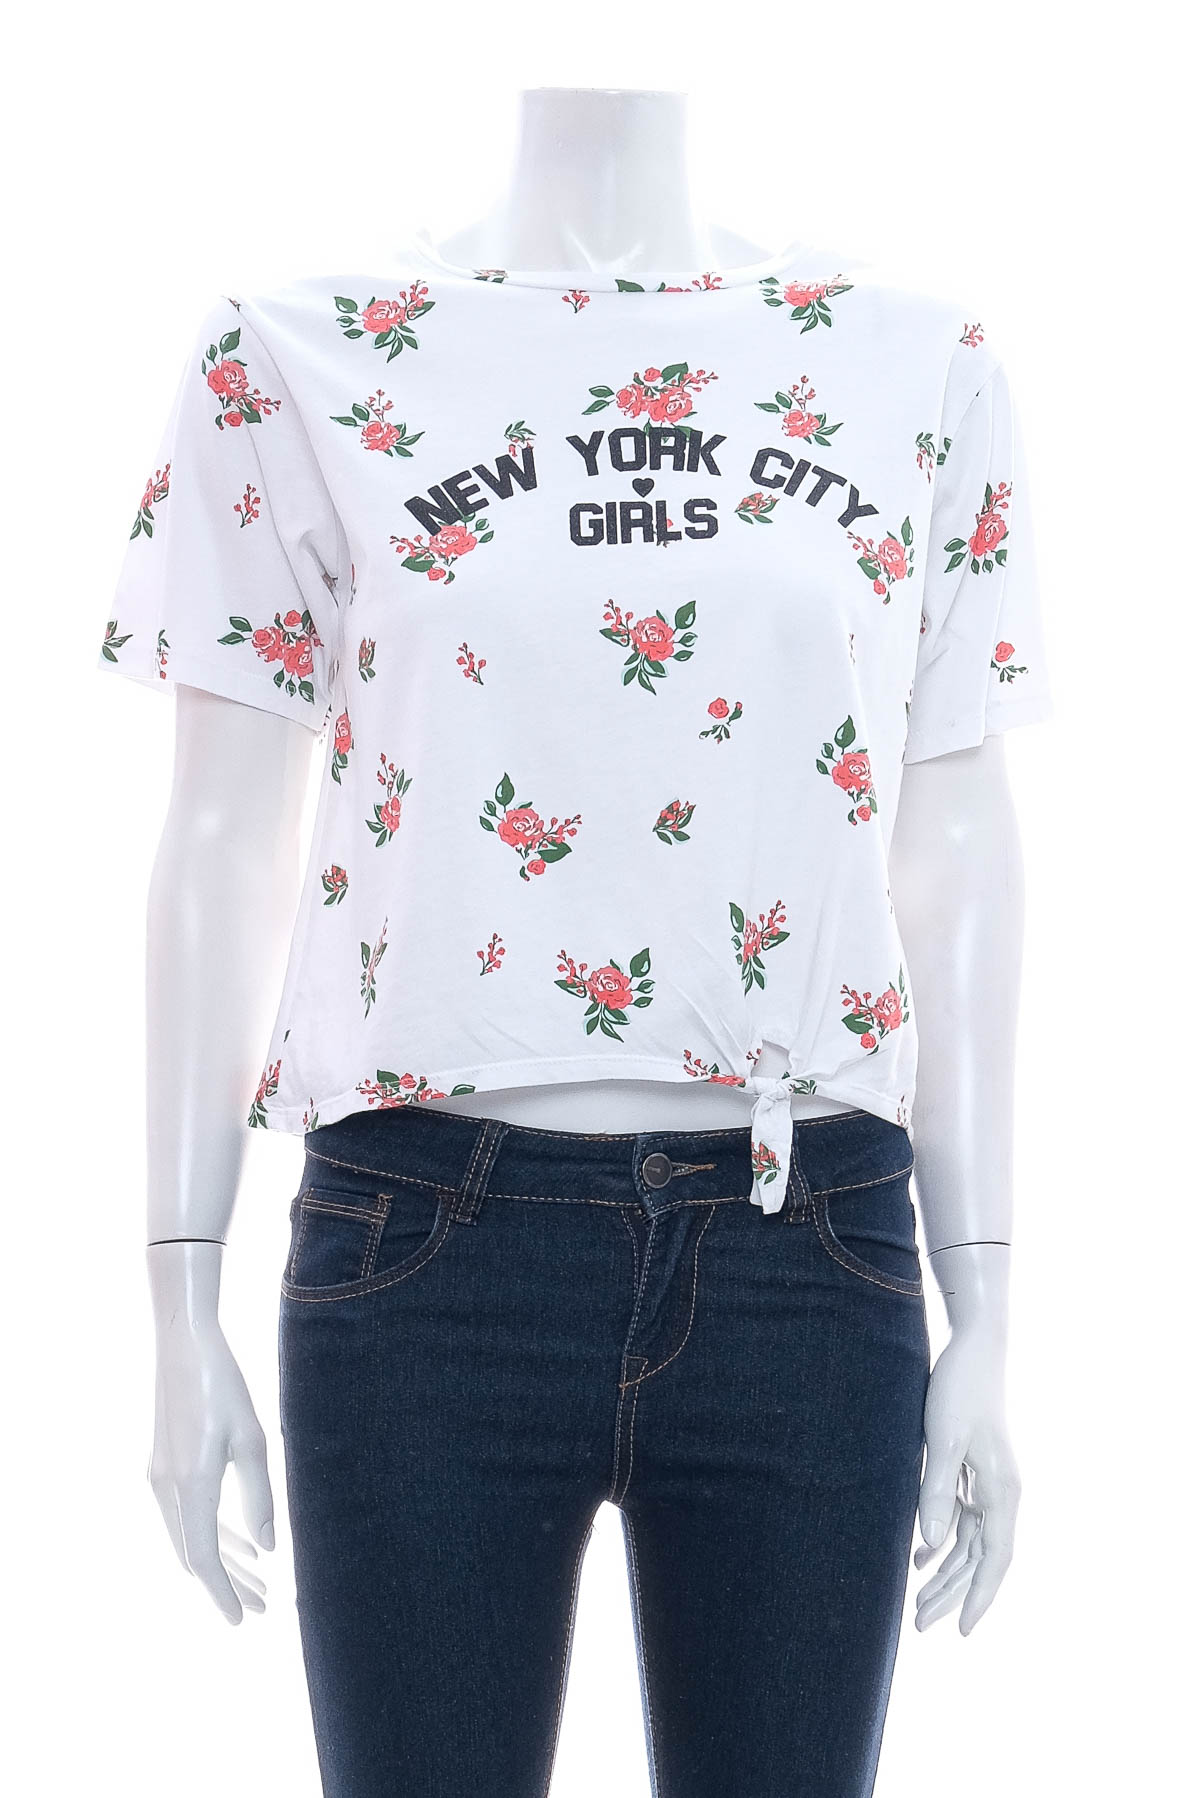 Girls' t-shirt - 0